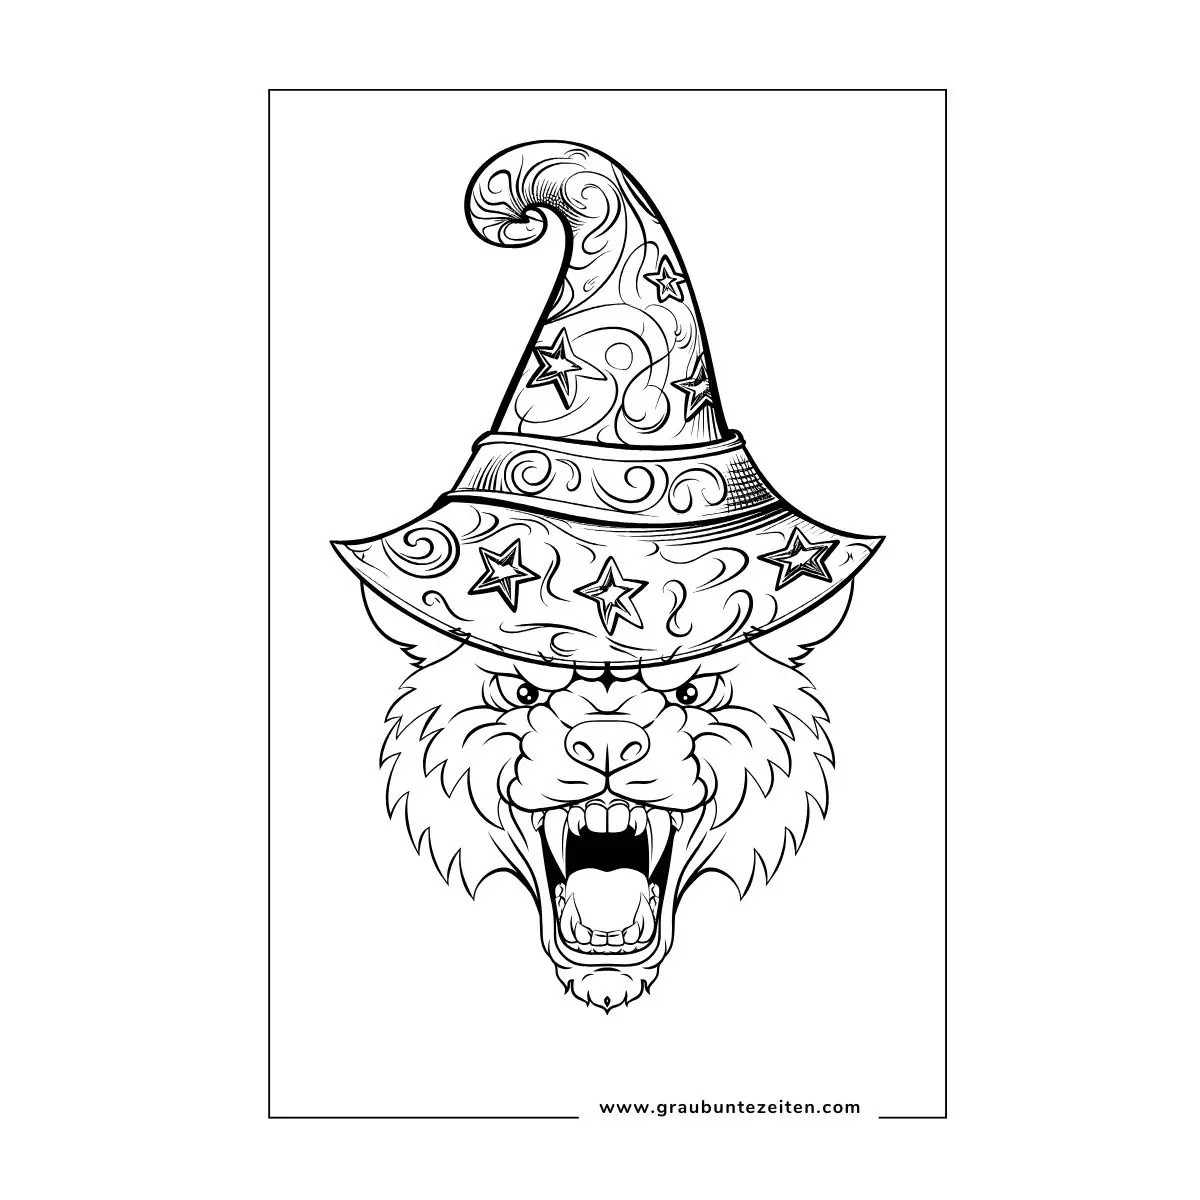 Ausmalbilder Halloween Erwachsene. Ein Werwolf trägt einen Zauberhut.